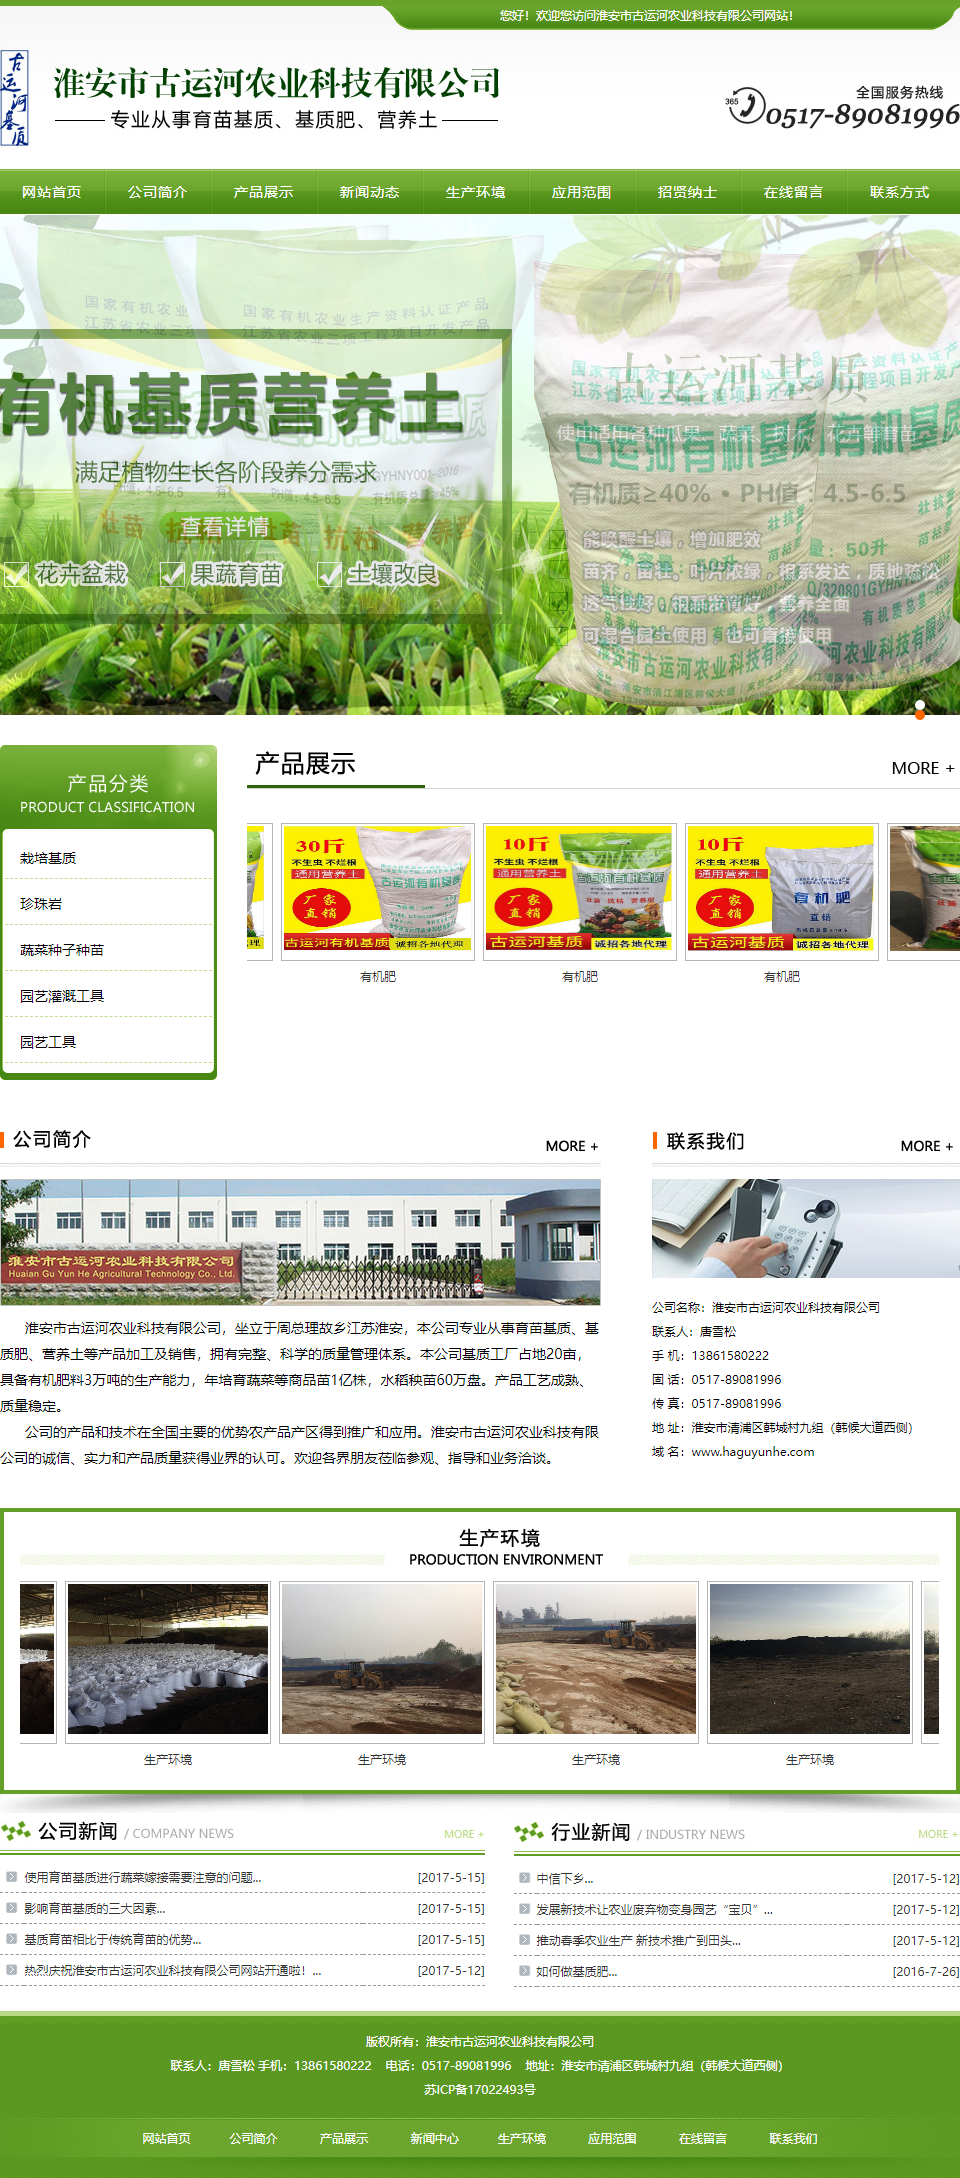 淮安市古运河农业科技有限公司网站案例